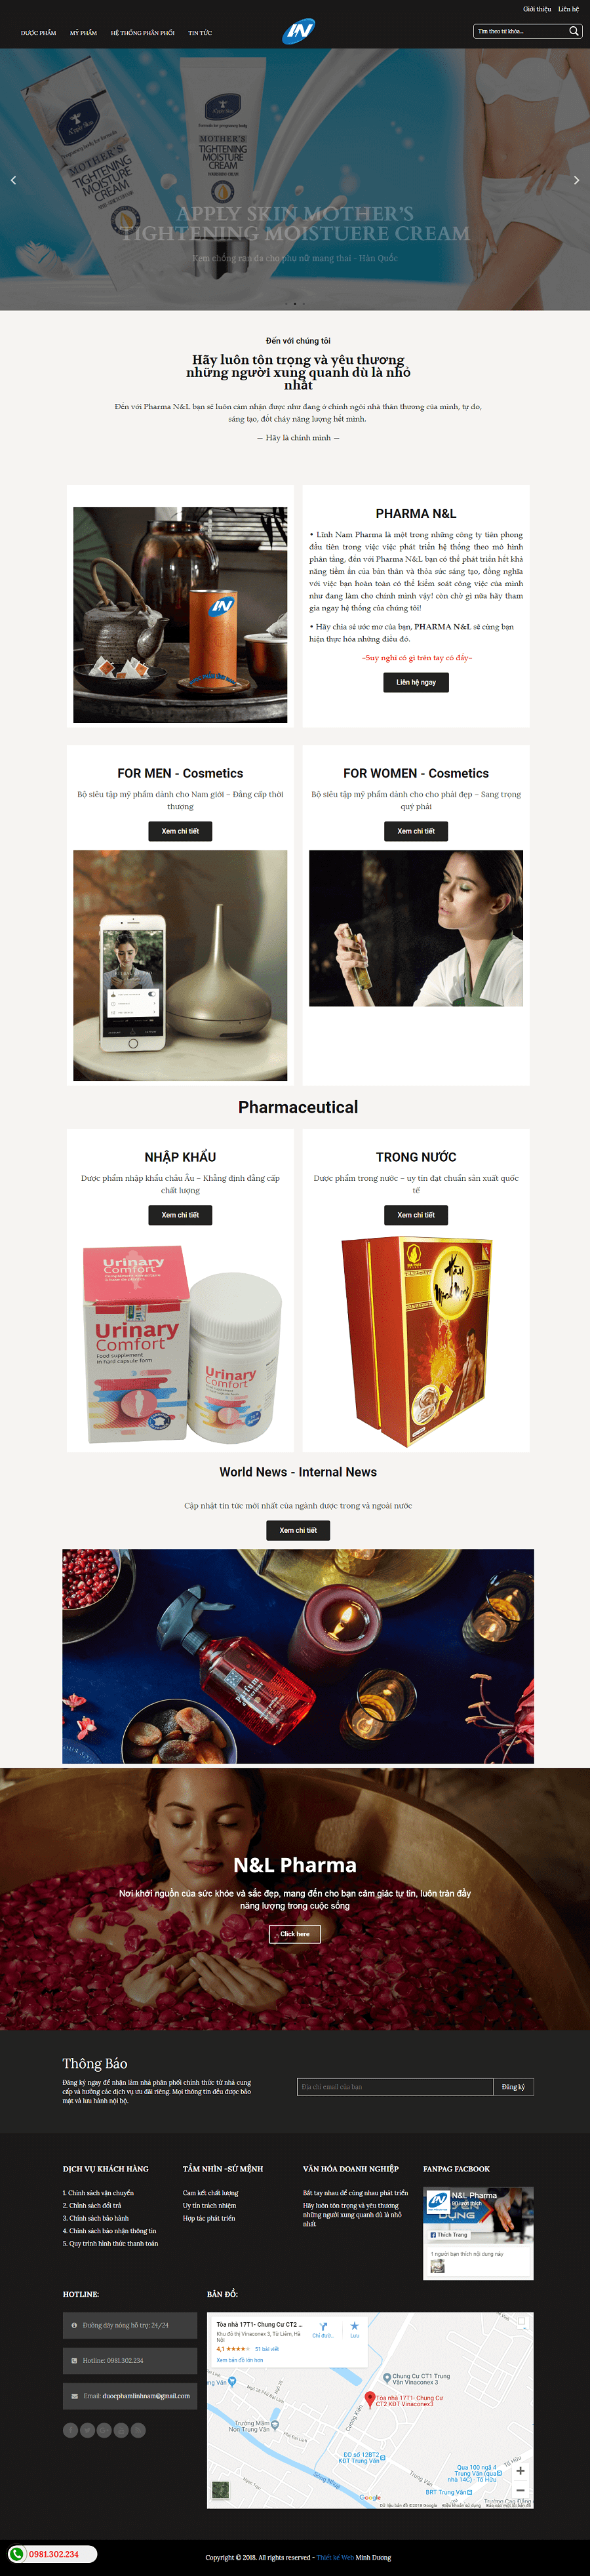 thiết kế website bán dược phẩm